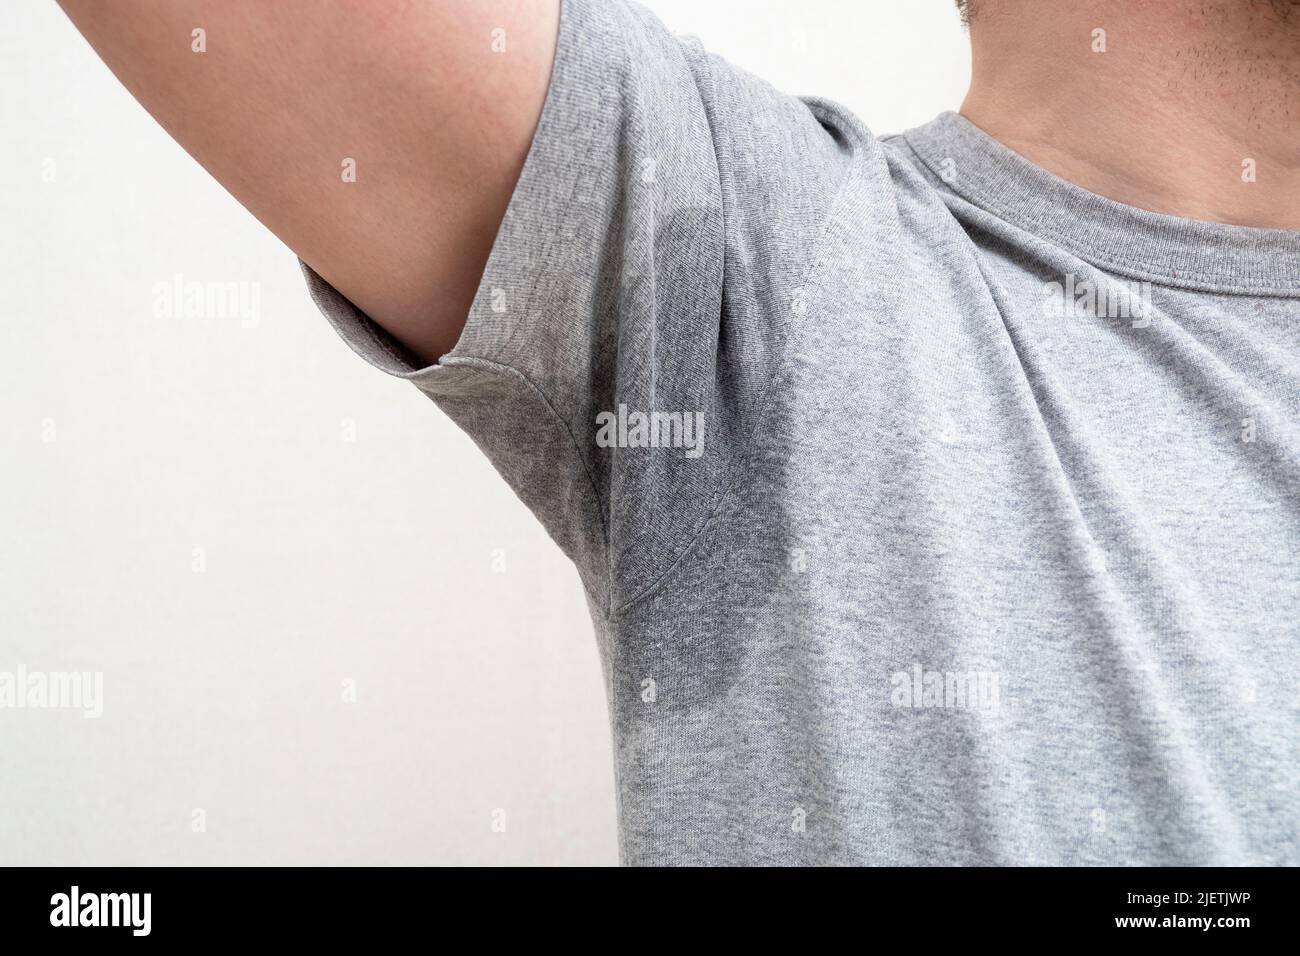 Ascella sudata, ascella bagnata macchia bagnata su t-shirt grigia Foto Stock